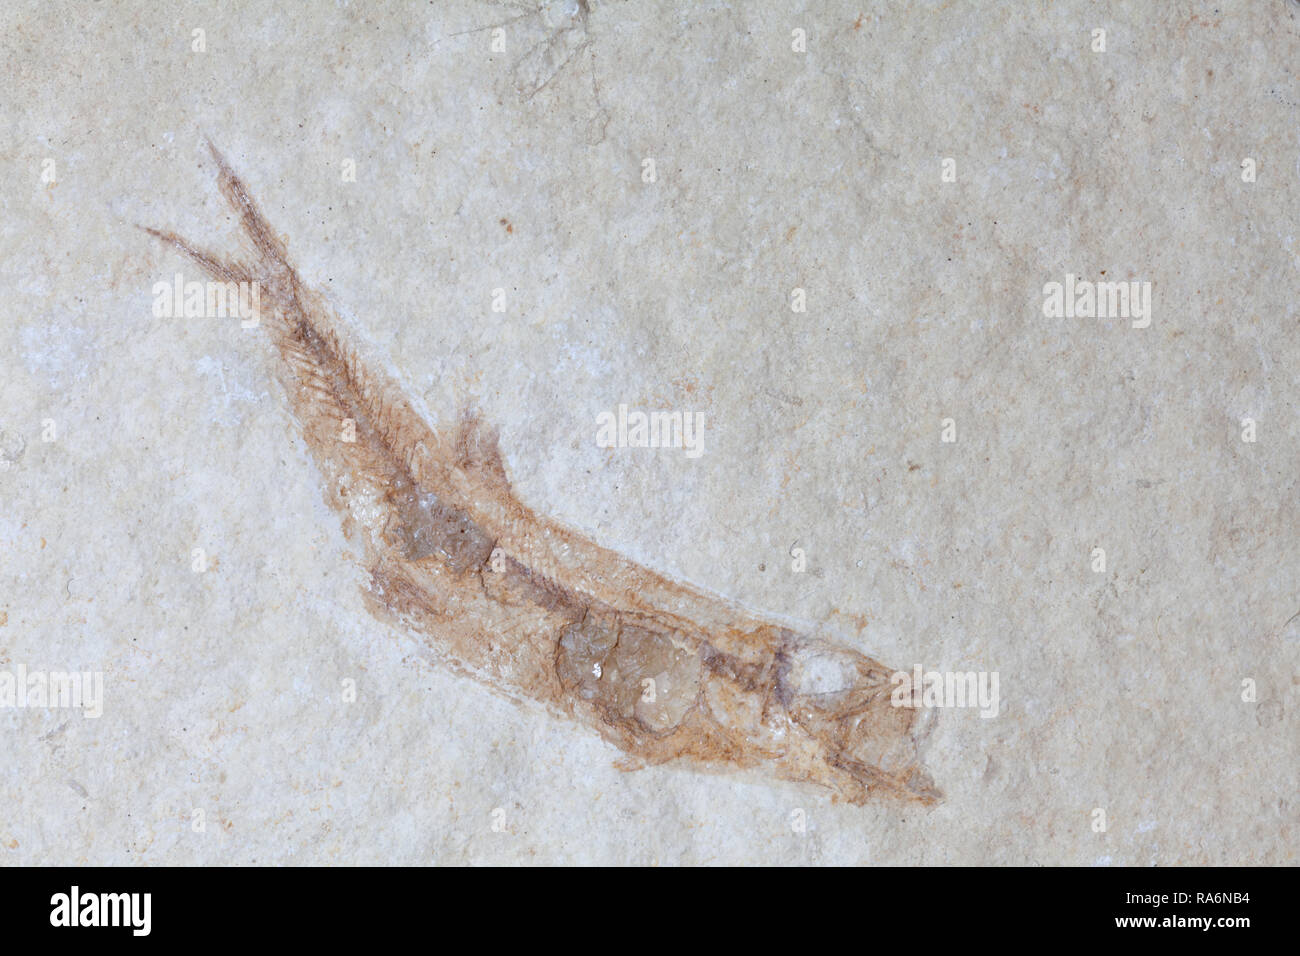 Fossile Fische Versteinerung, Solnhofen, Deutschland. Leptolepis sprattifornis Malm.Ca. 140 Mill. Jahre alt. Stockfoto